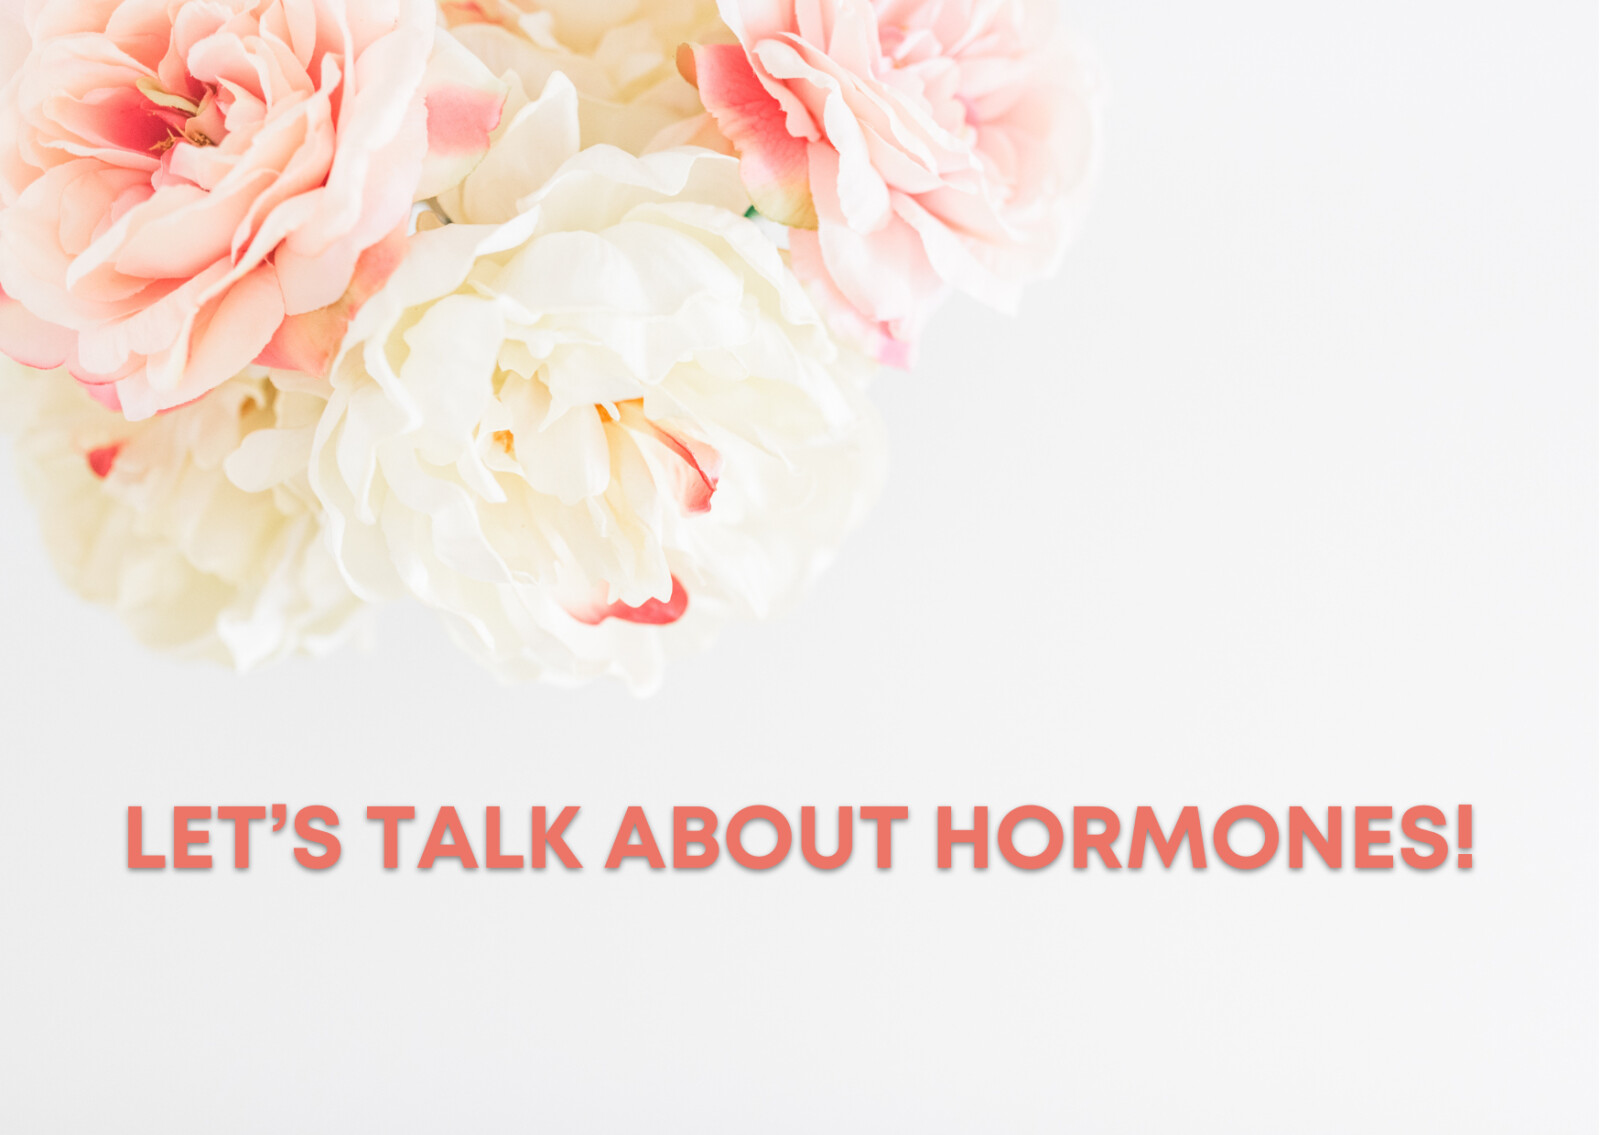 LET’S TALK ABOUT HORMONES!